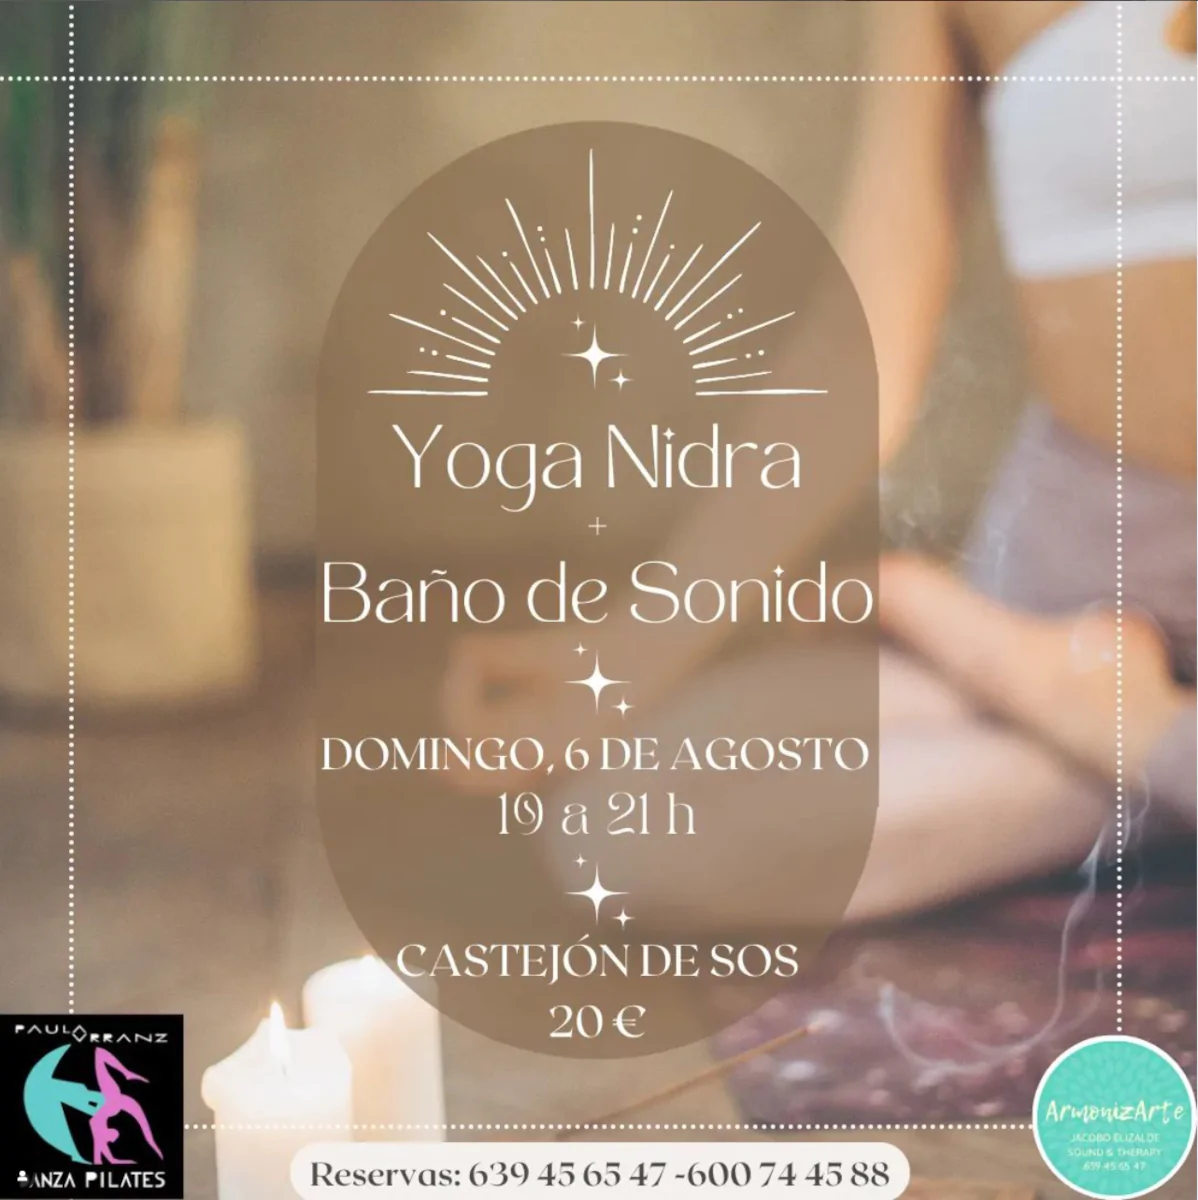 Yoga Nidra + Baño de sonido | enBenas.com